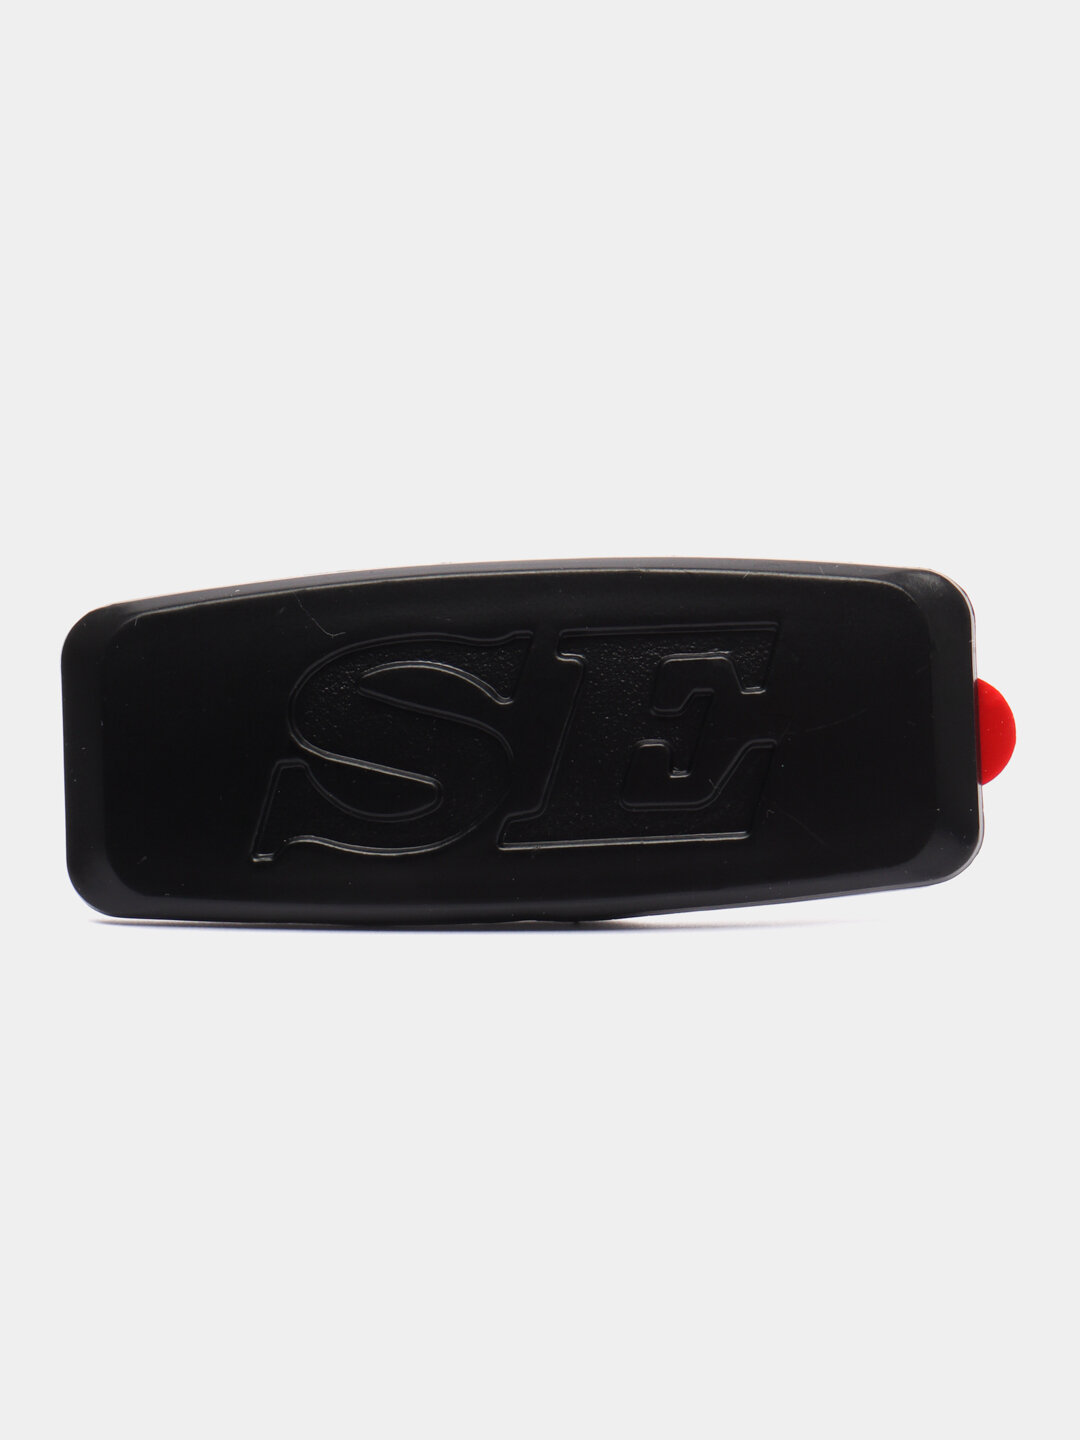 Заглушки SE, шильдик-заглушка поворотника, матовое покрытие Цвет Черный